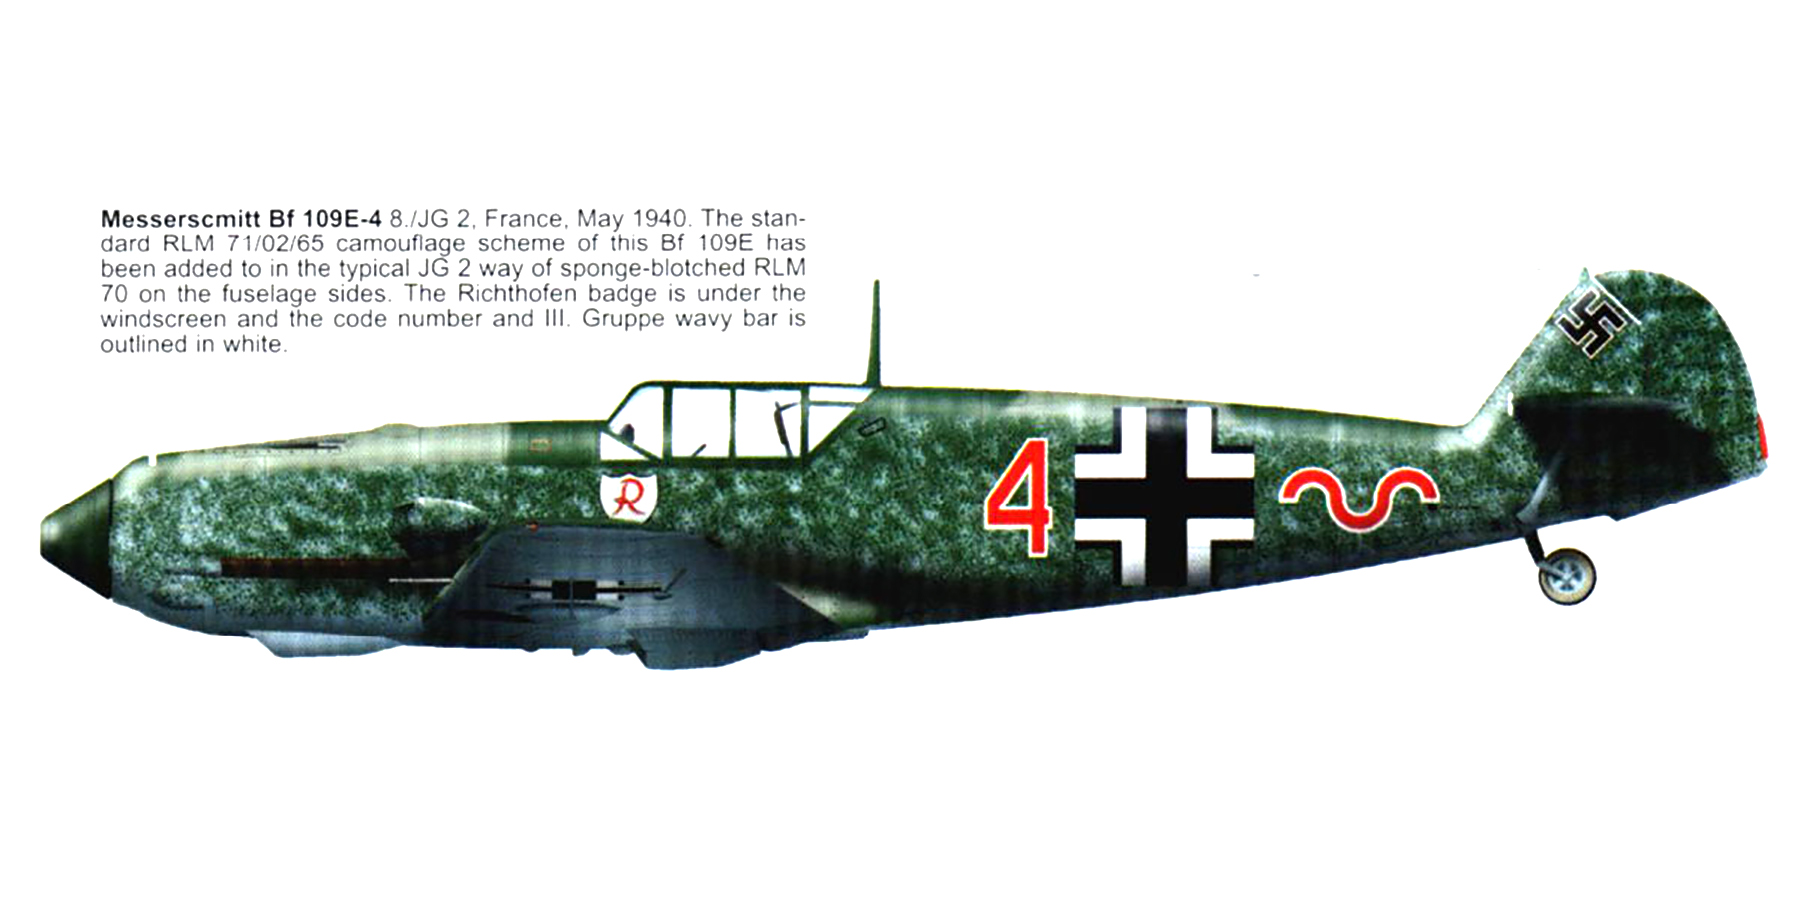 Messerschmitt Bf 109E4 8.JG2 Red 4 Georg Hippel France 1940 0B